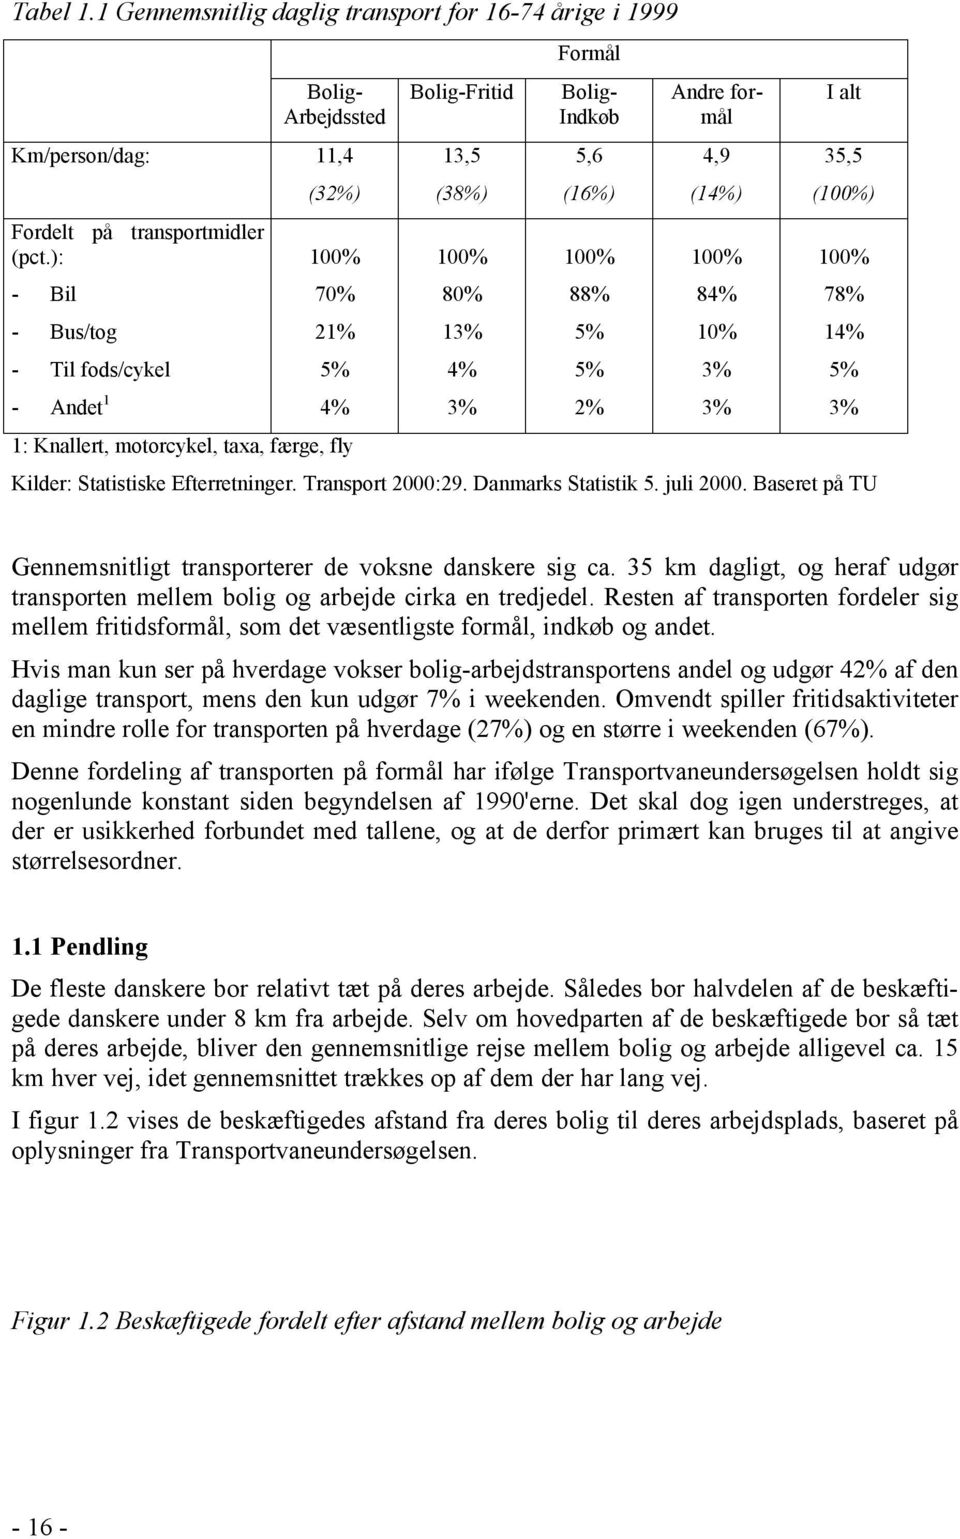 5% 2% Andre formål 4,9 (14%) 100% 84% 10% 3% 3% I alt 35,5 (100%) 100% Kilder: Statistiske Efterretninger. Transport 2000:29. Danmarks Statistik 5. juli 2000.